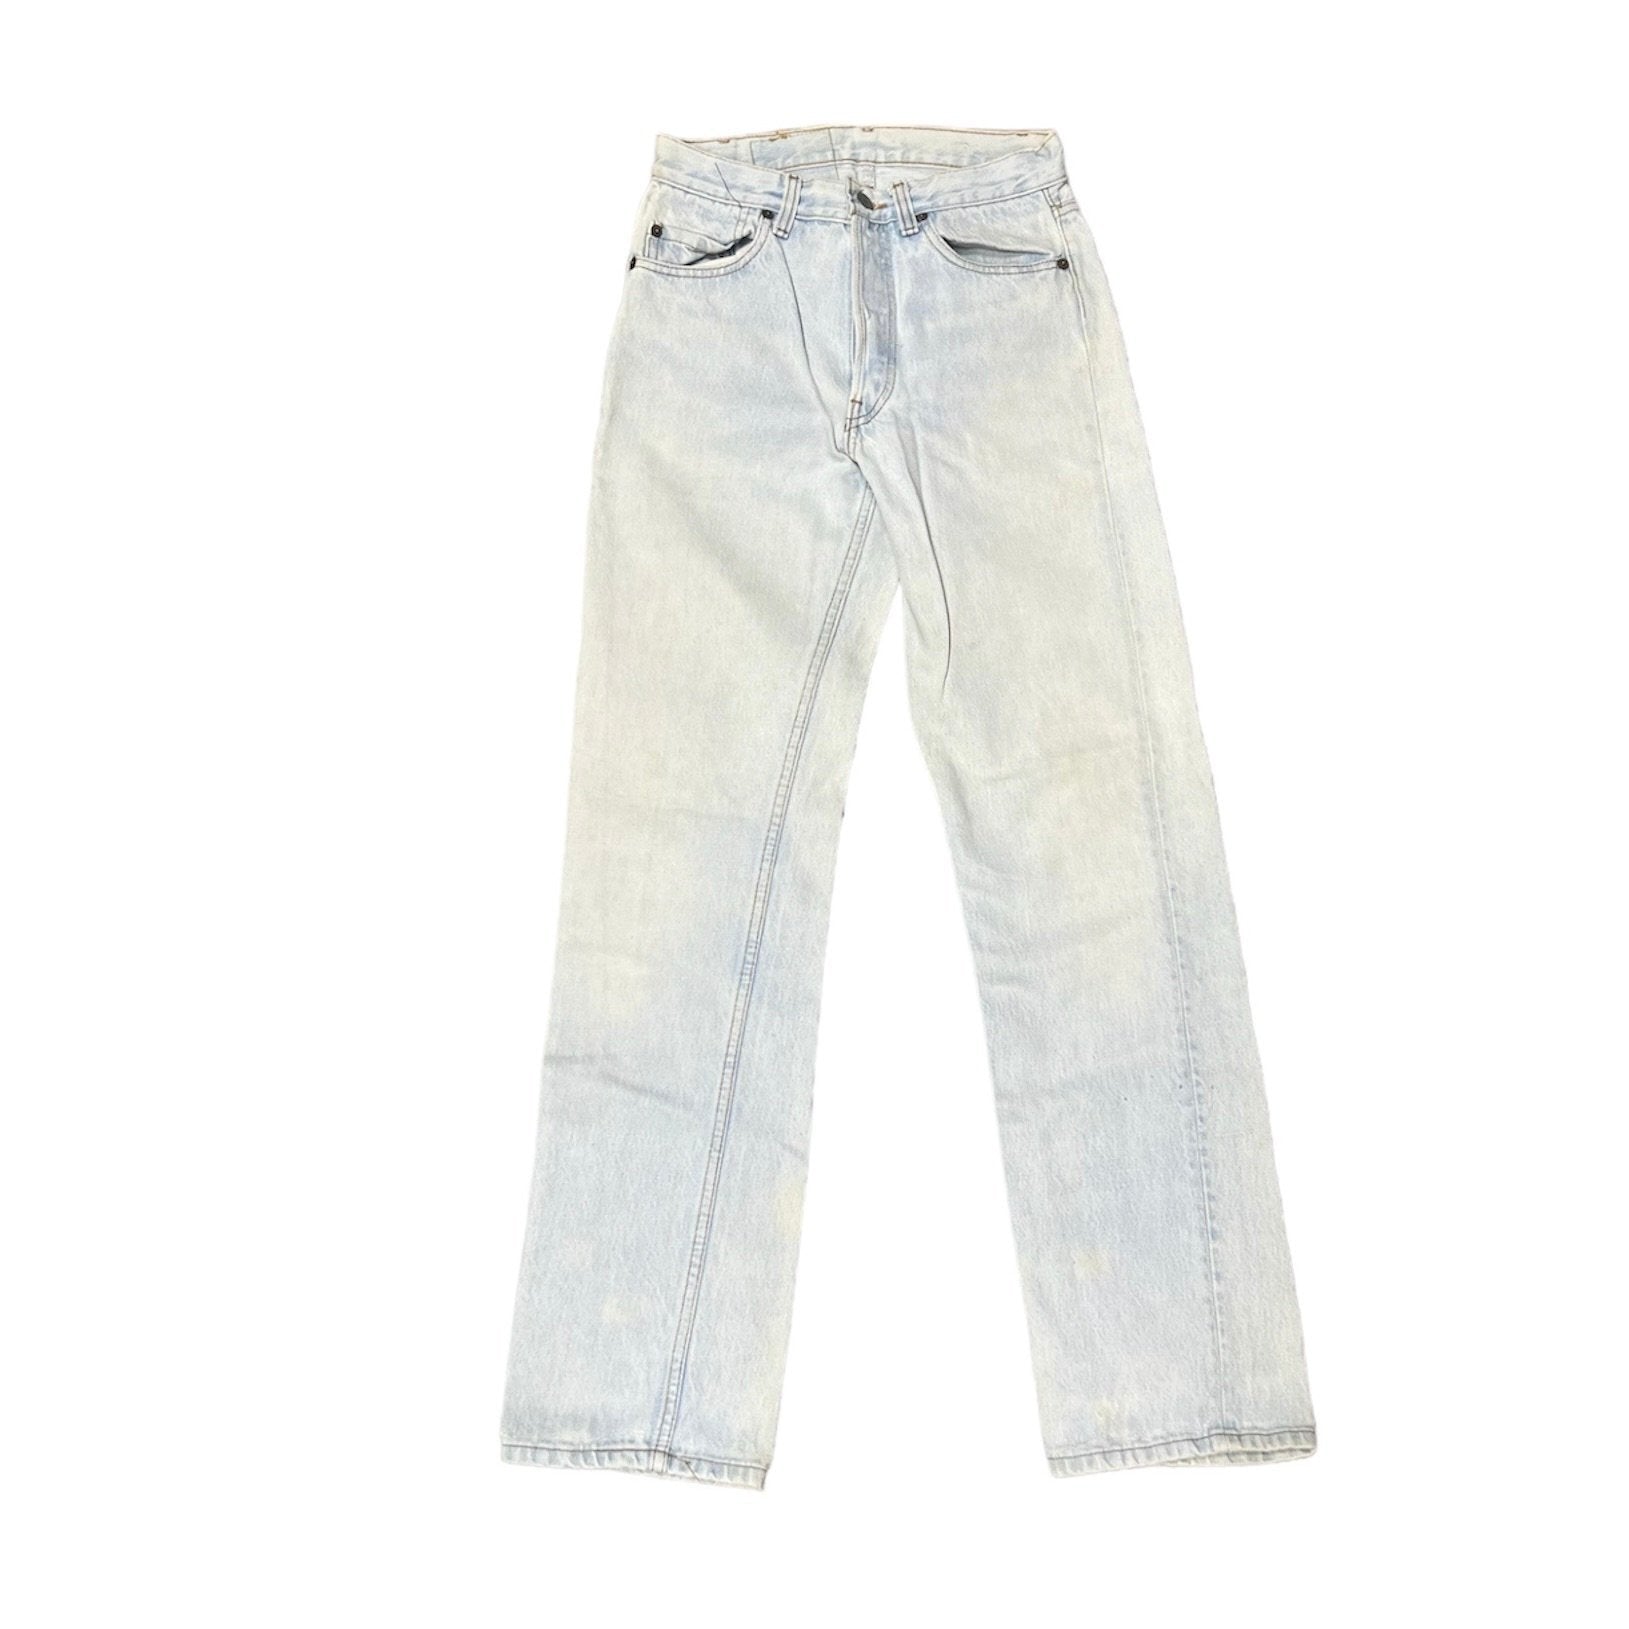 Vintage Levis Very Light Blue Jeans (W27/L32)